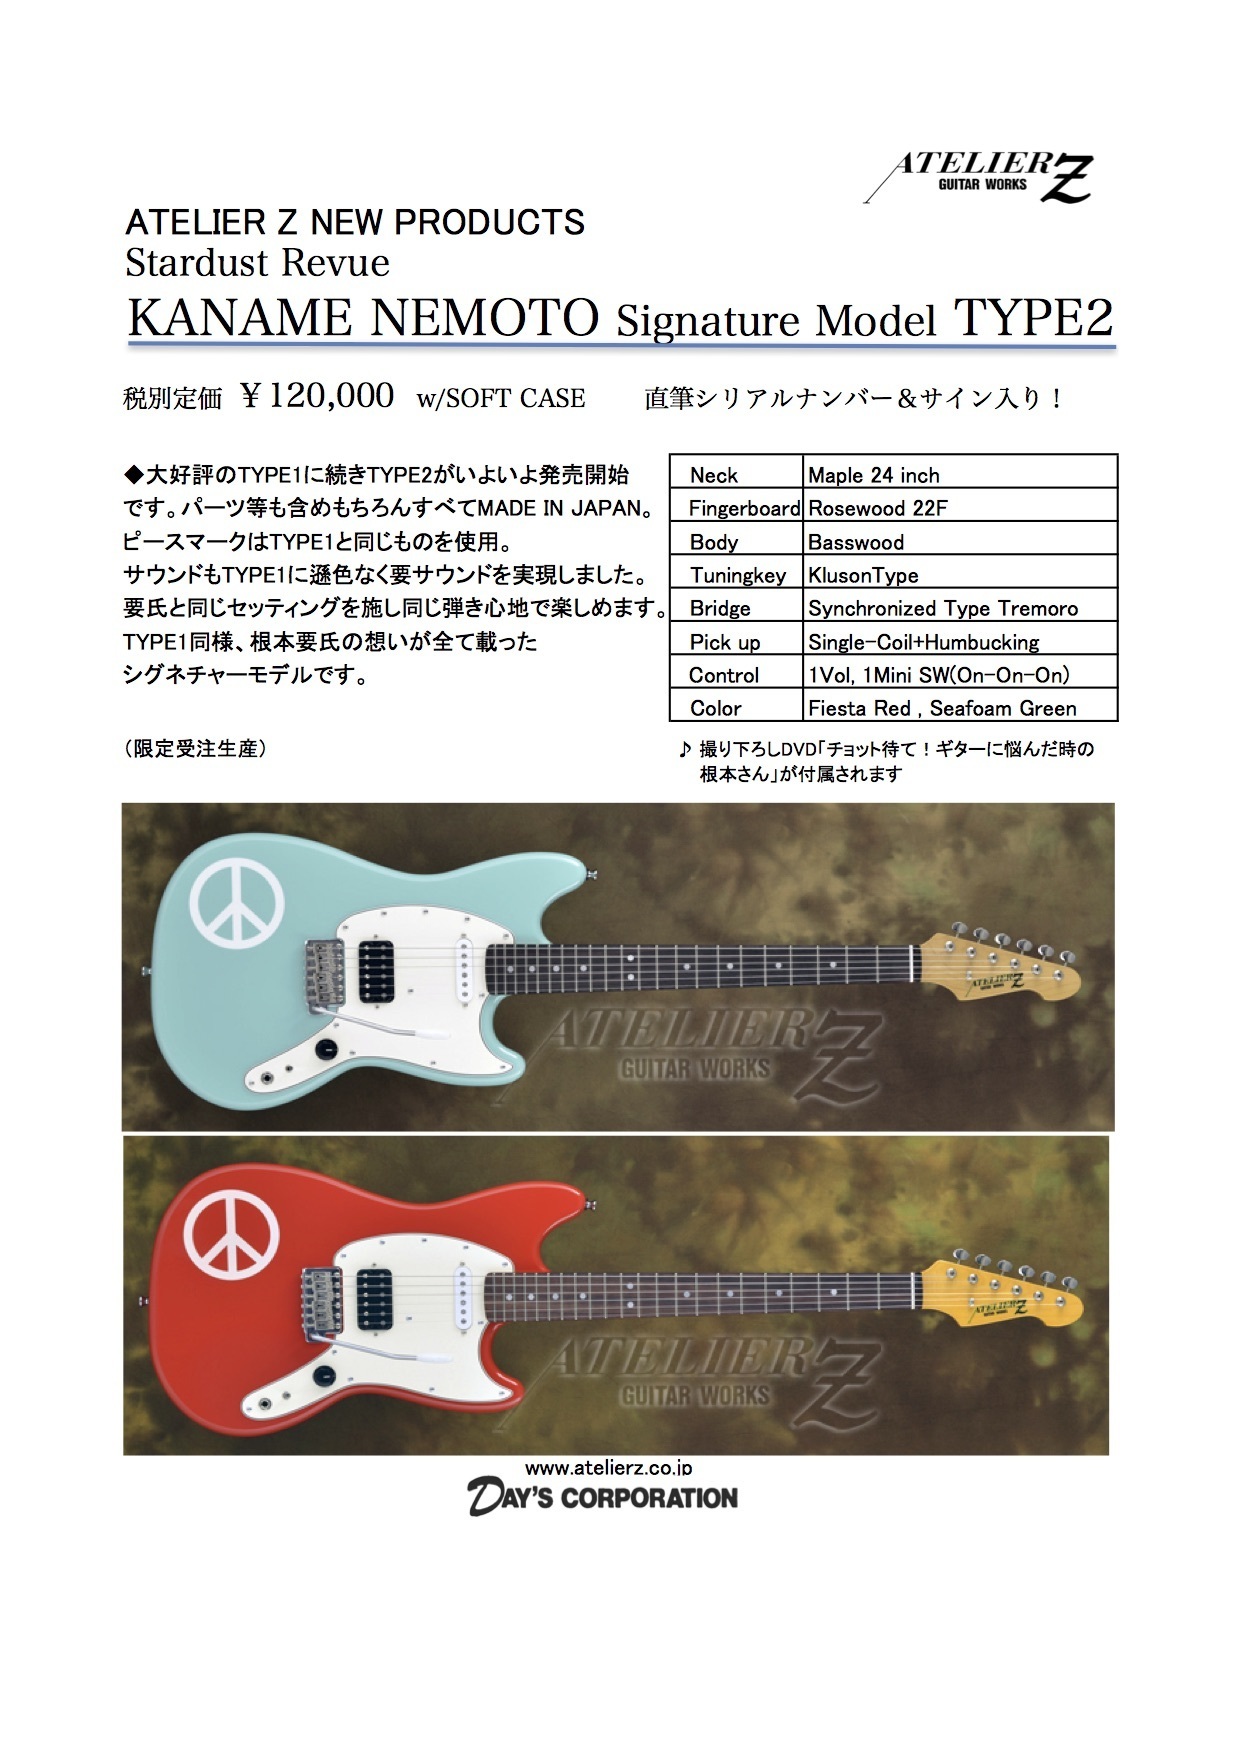 KANAME NEMOTO Signature model TYPE2仕様について_b0091544_16482375.jpg